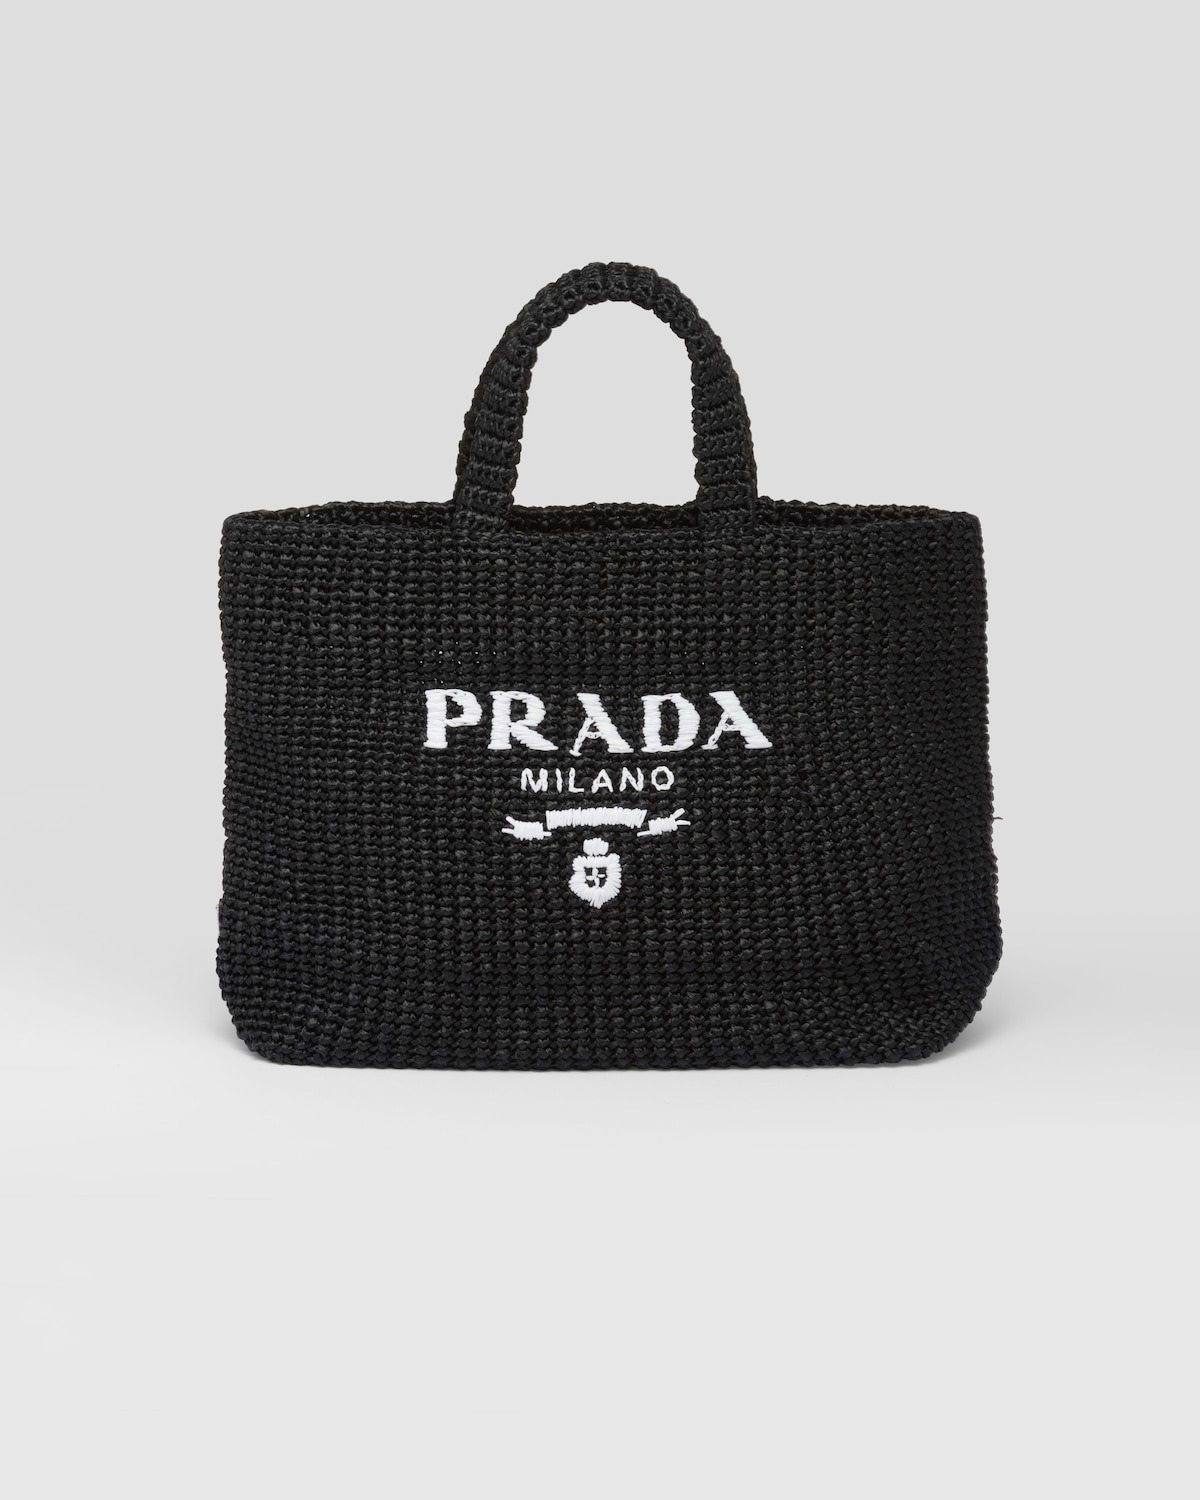 Gigi Hadid Carries The Prada Etiquette Bag